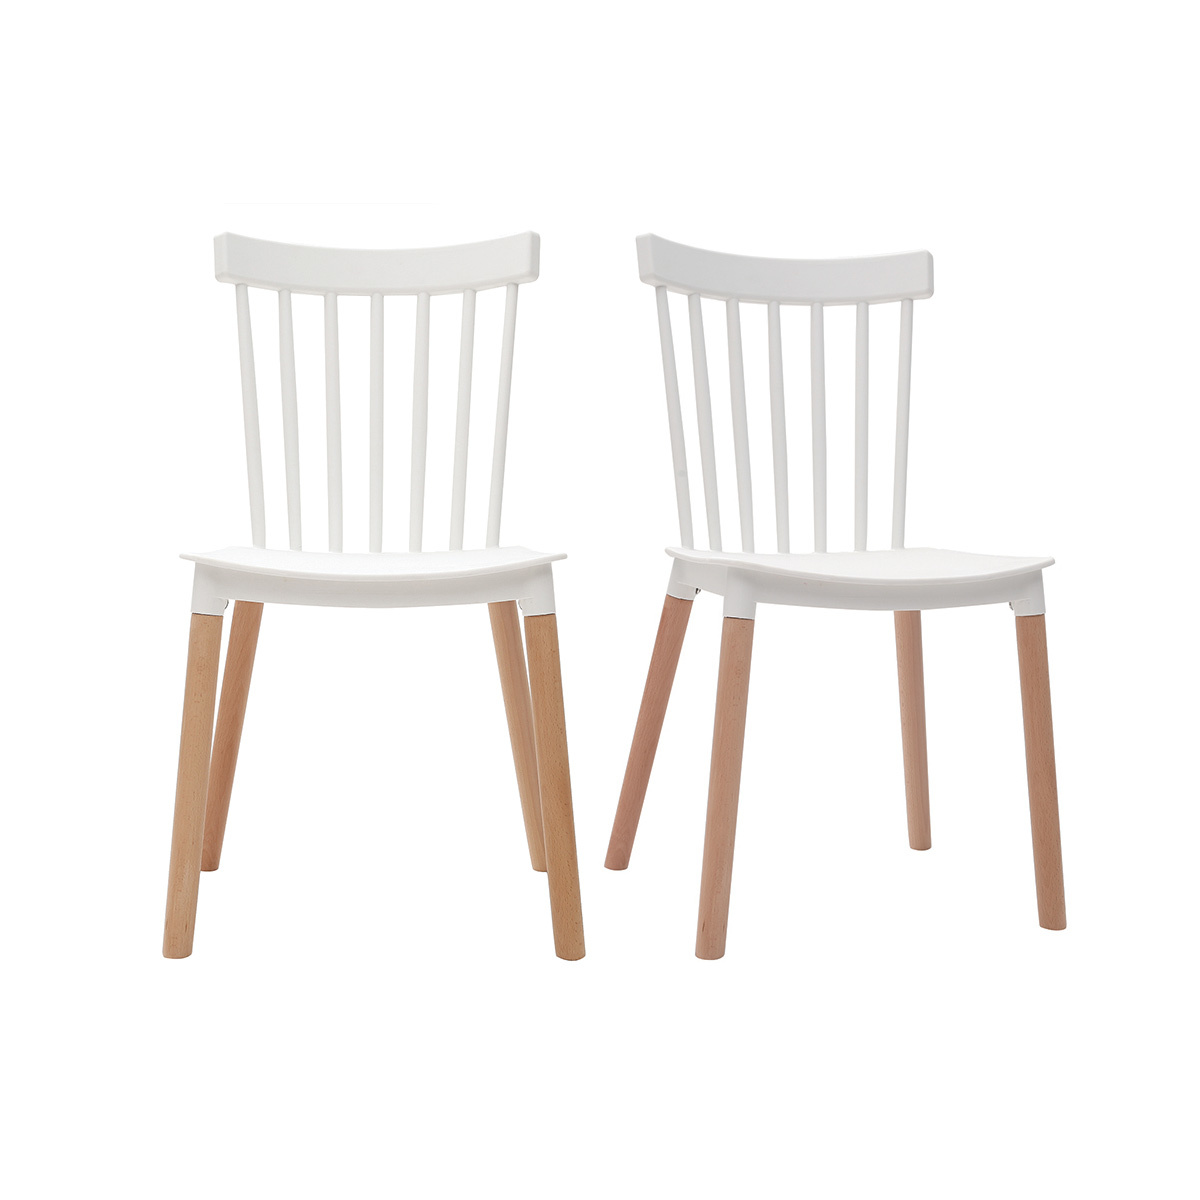 Chaises design bicolores blanc et bois (lot de 2) GAMBO vue1